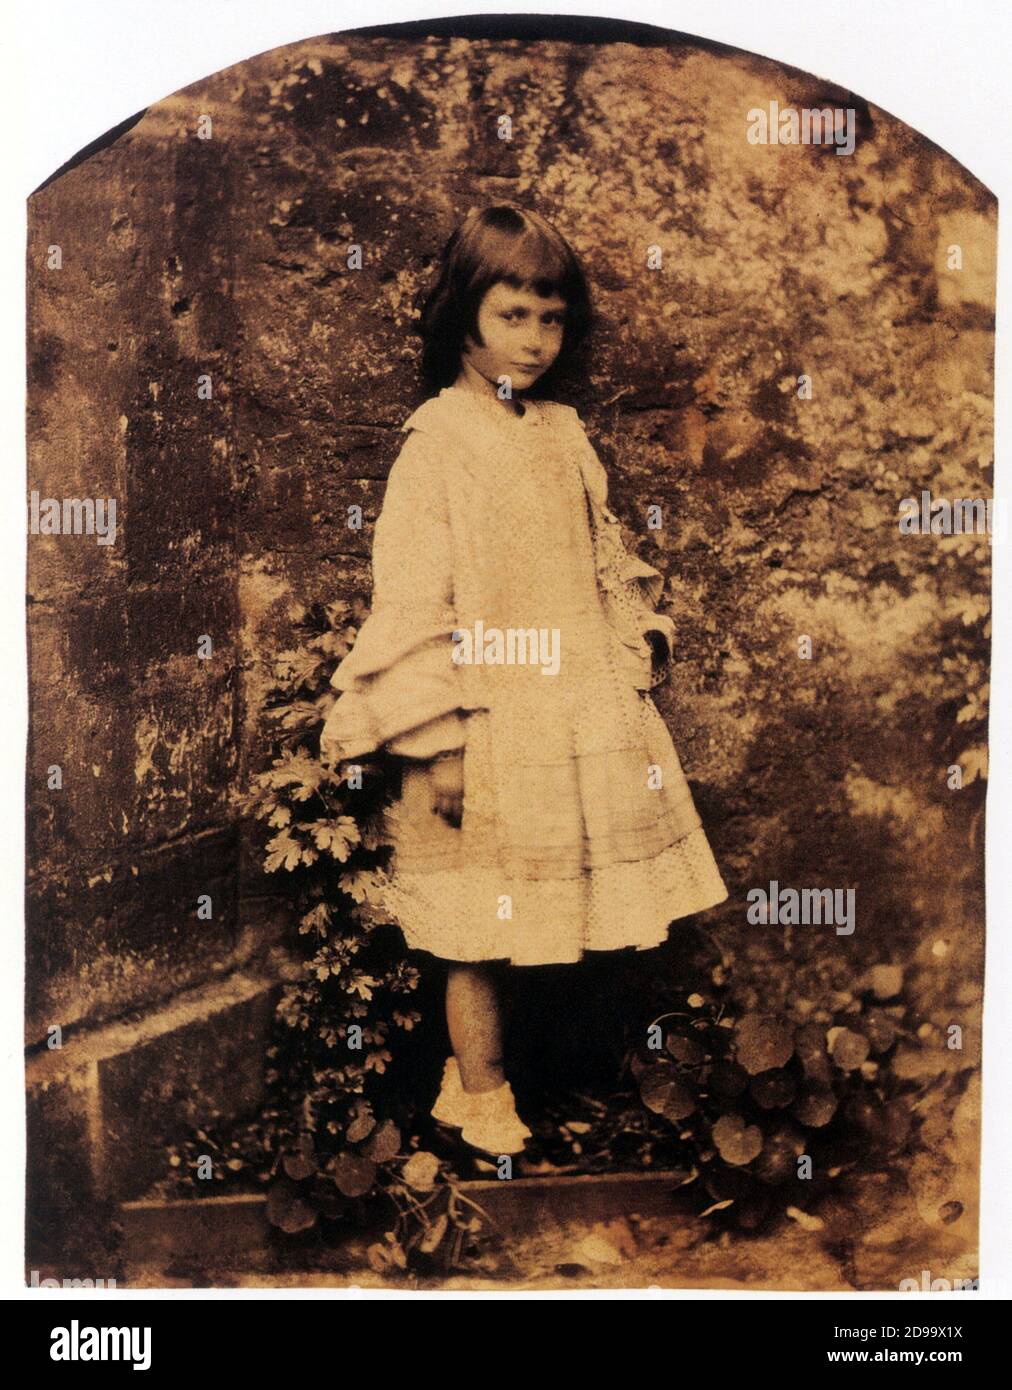 1858 , GROSSBRITANNIEN : Alice Liddell ( die kleine Muse Modell für ALICE IM WUNDERLAND - 1865 ) porträtiert von dem Fotografen, Mathematiker und Schriftsteller LEWIS CARROLL ( geboren Charles Lutwidge Dodgson , 1832 - 1898 ) - LETTERATURA - LITERATUR - SCRITTORE - bambina - Portrait - ritratto - Kind - personalità da giovani bambini - Persönlichkeitskind - ---- Archivio GBB Stockfoto